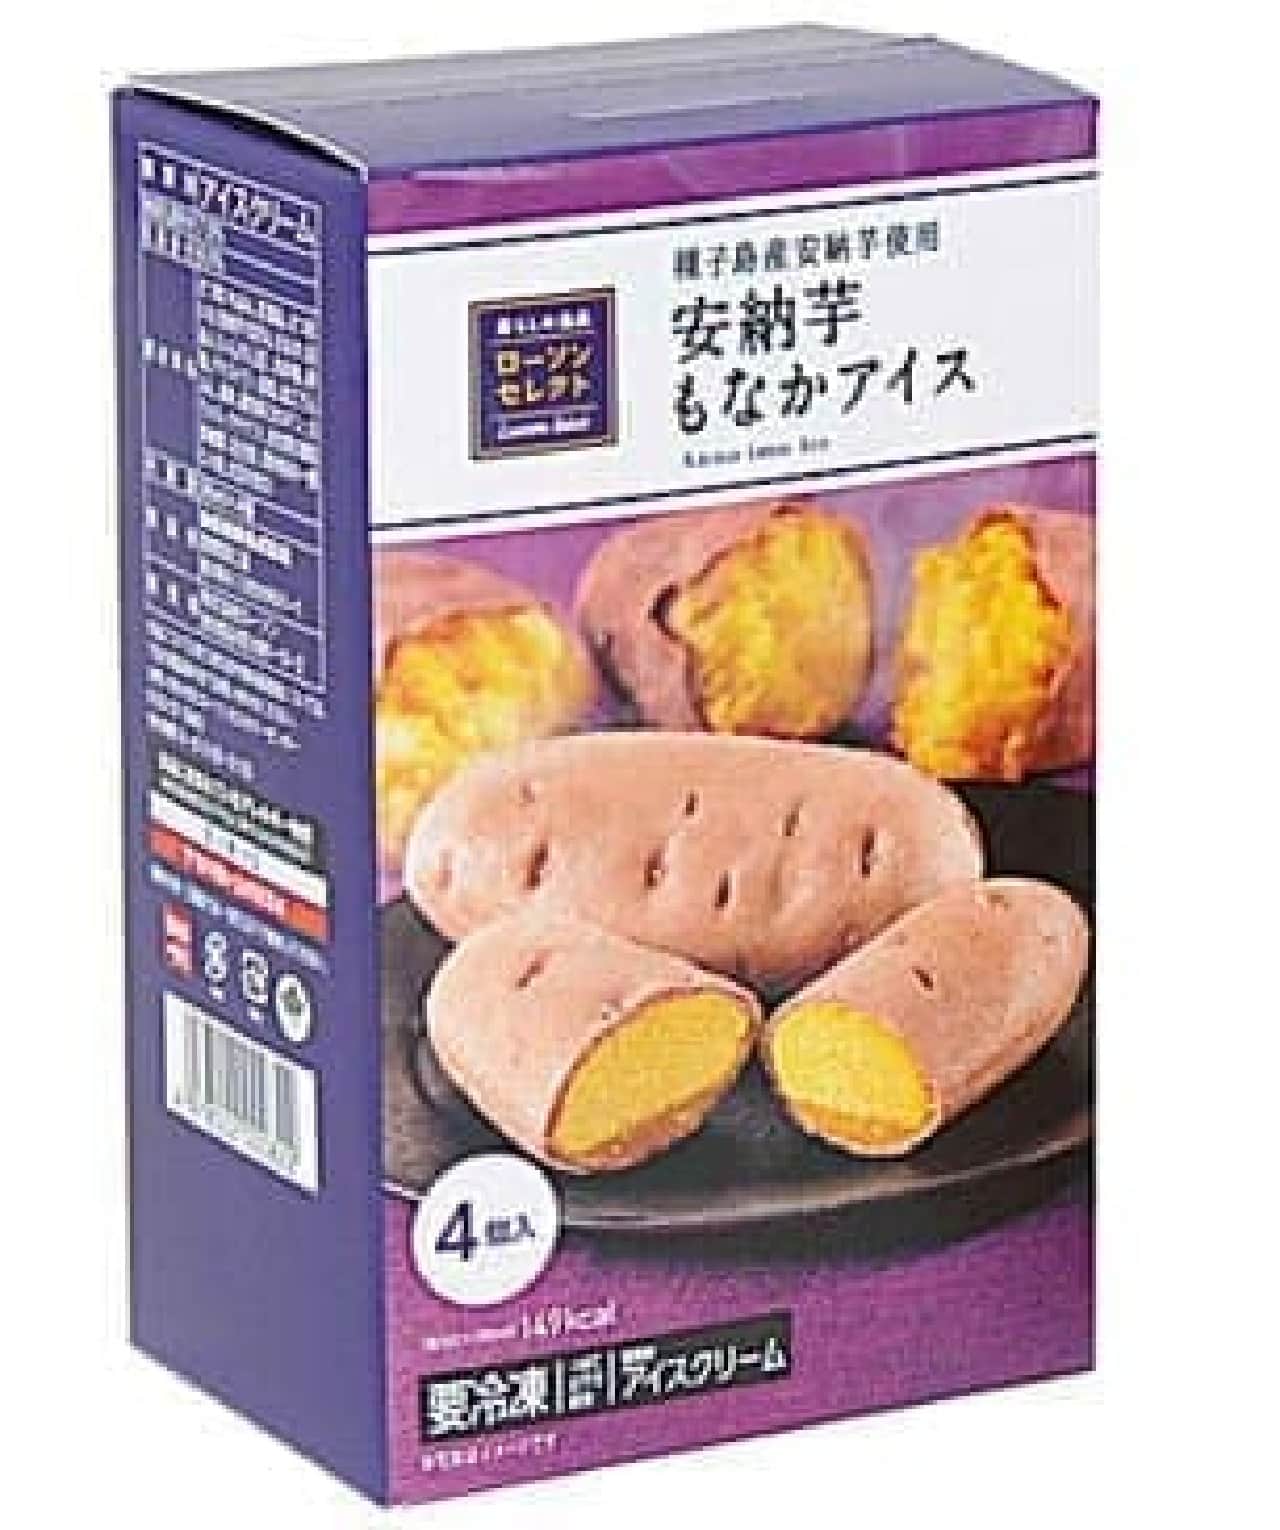 Anno potato monaka ice cream